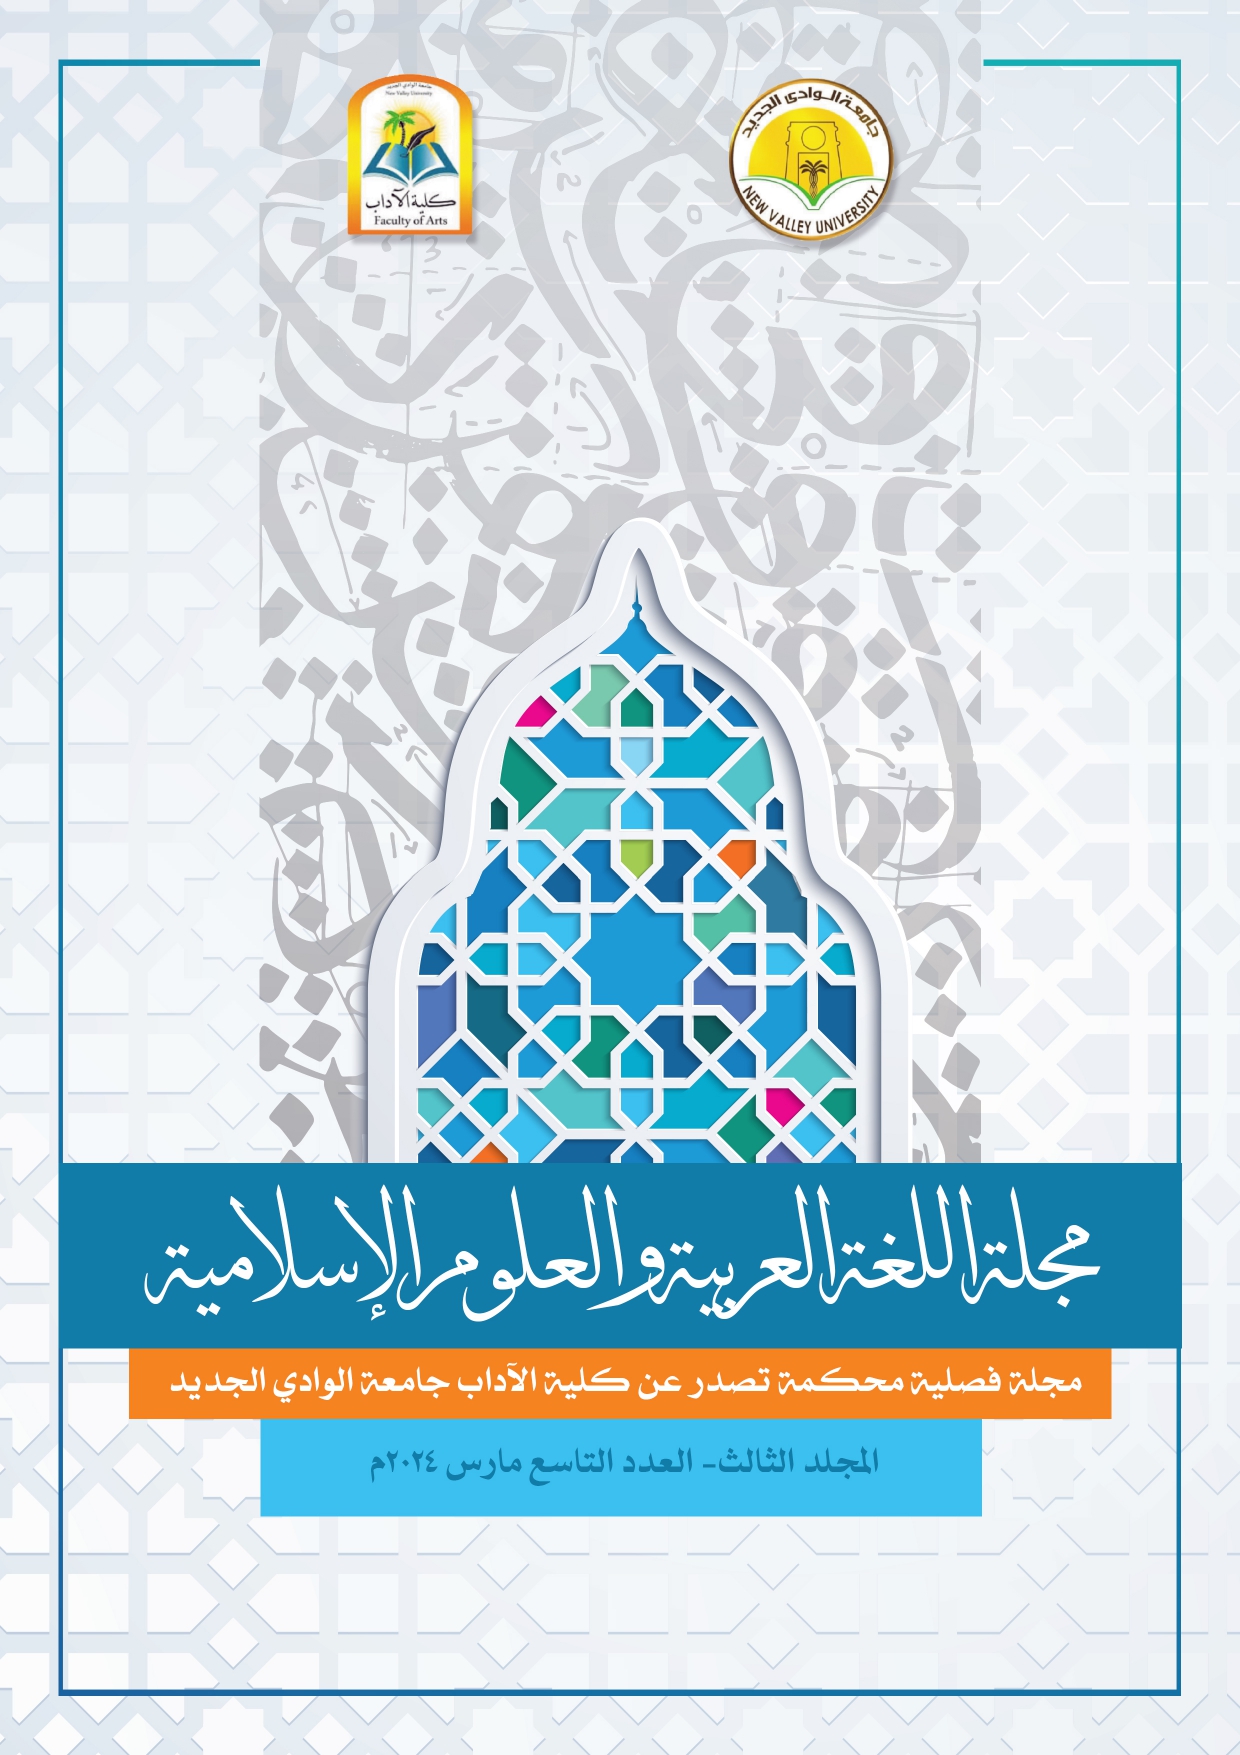 مجلة اللغة العربية والعلوم الإسلامية